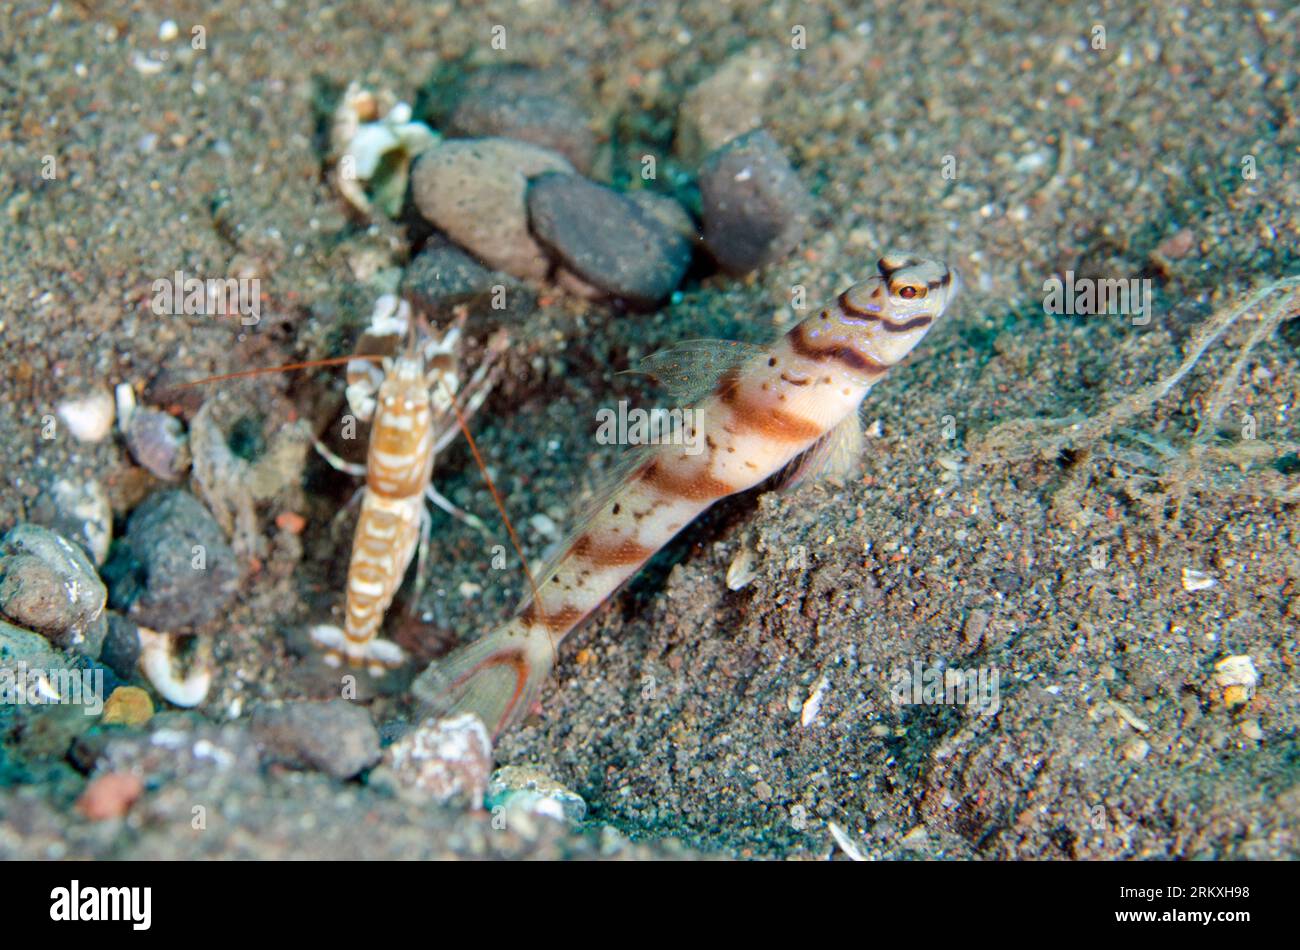 Slantbar Shrimpgoby, Amblyeleotris diagonalis, with Snapping Shrimp, Alpheus sp, Secret Place dive site, Amed, Karangasem, Bali, Indonesia Stock Photo